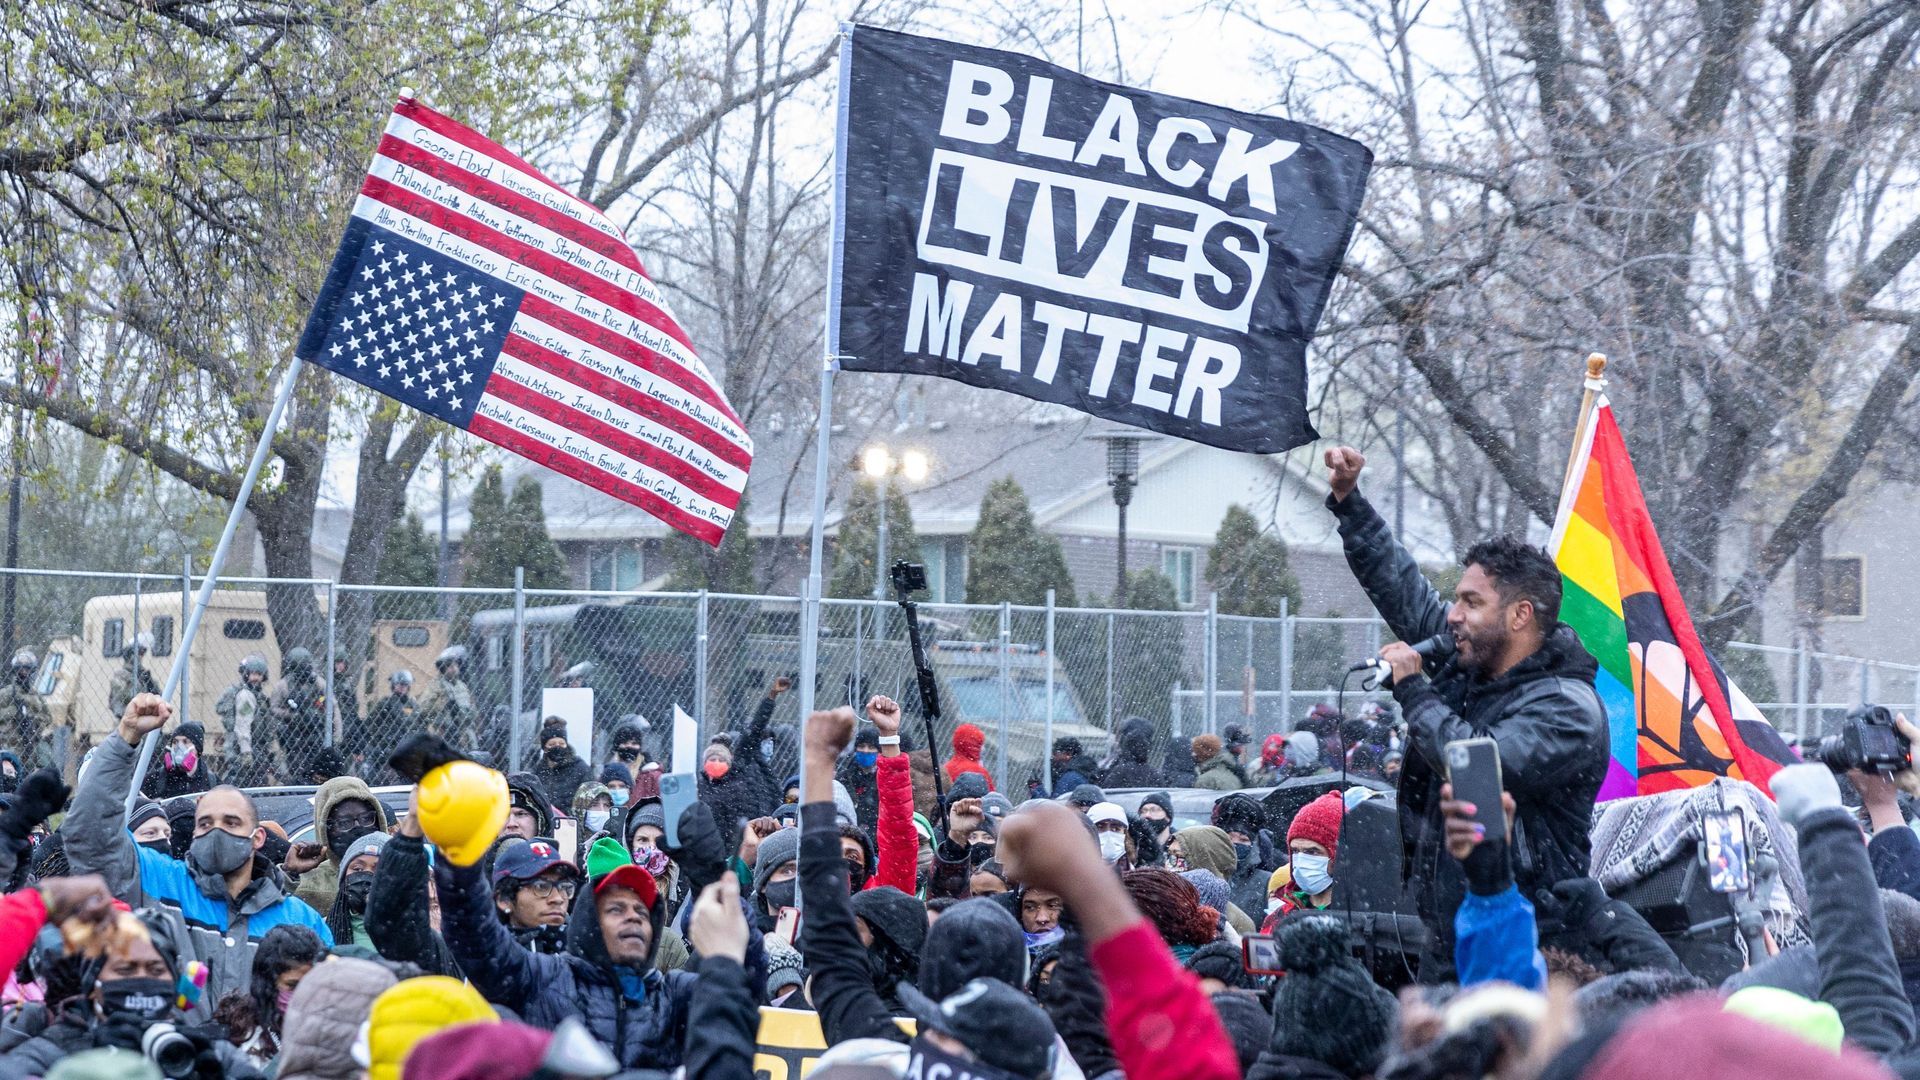 A black lives matter protest.